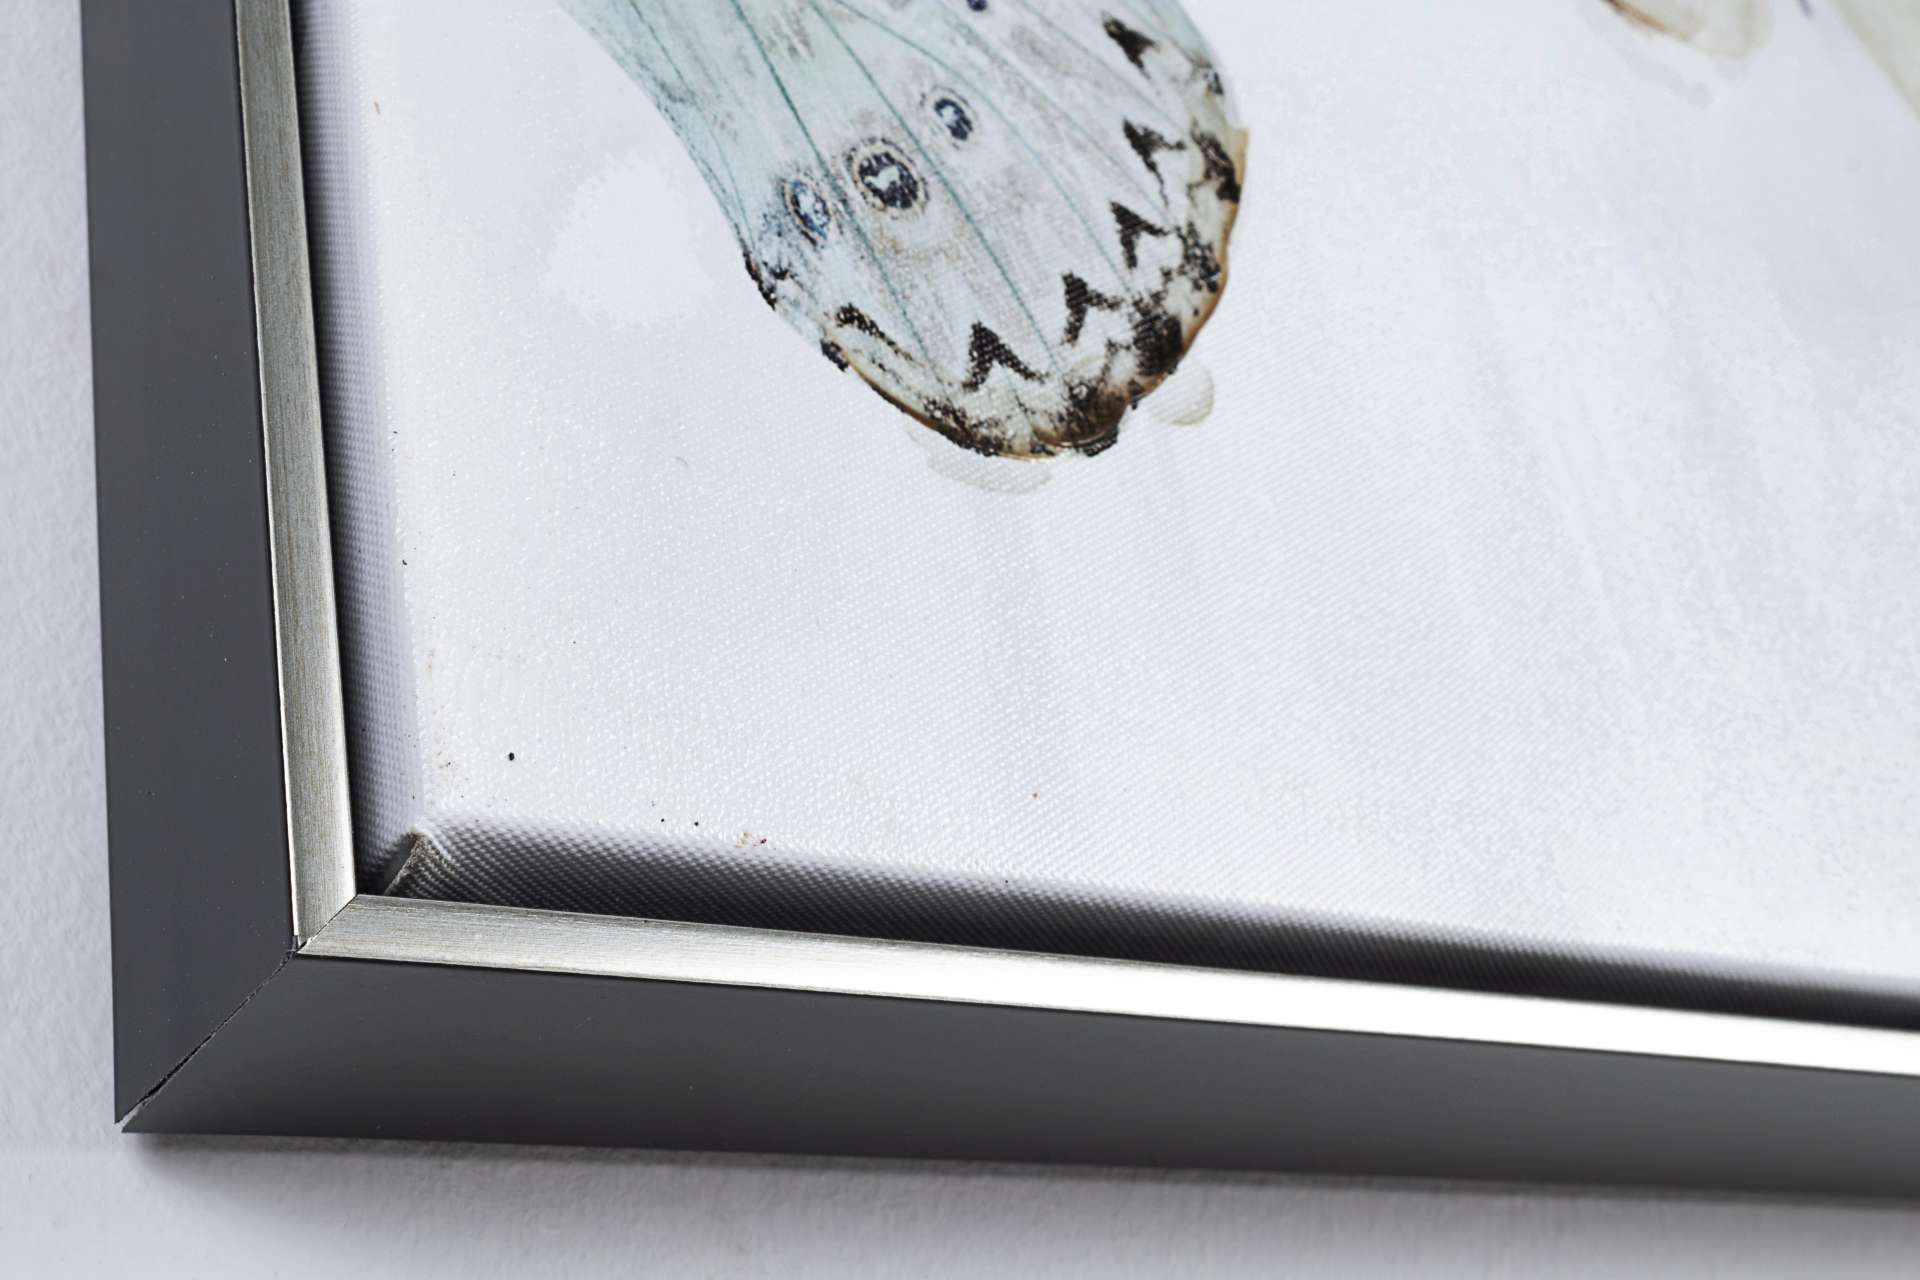 Das Ölbild Butterfly No.2 überzeugt mit ihrem klassischen Design. Das Bild verfügt über einen Druck auf Leinwand. Das Gestell ist aus Tannenholz und der Rahmen aus Kunststoff. Die Maße sind 82x82 cm.